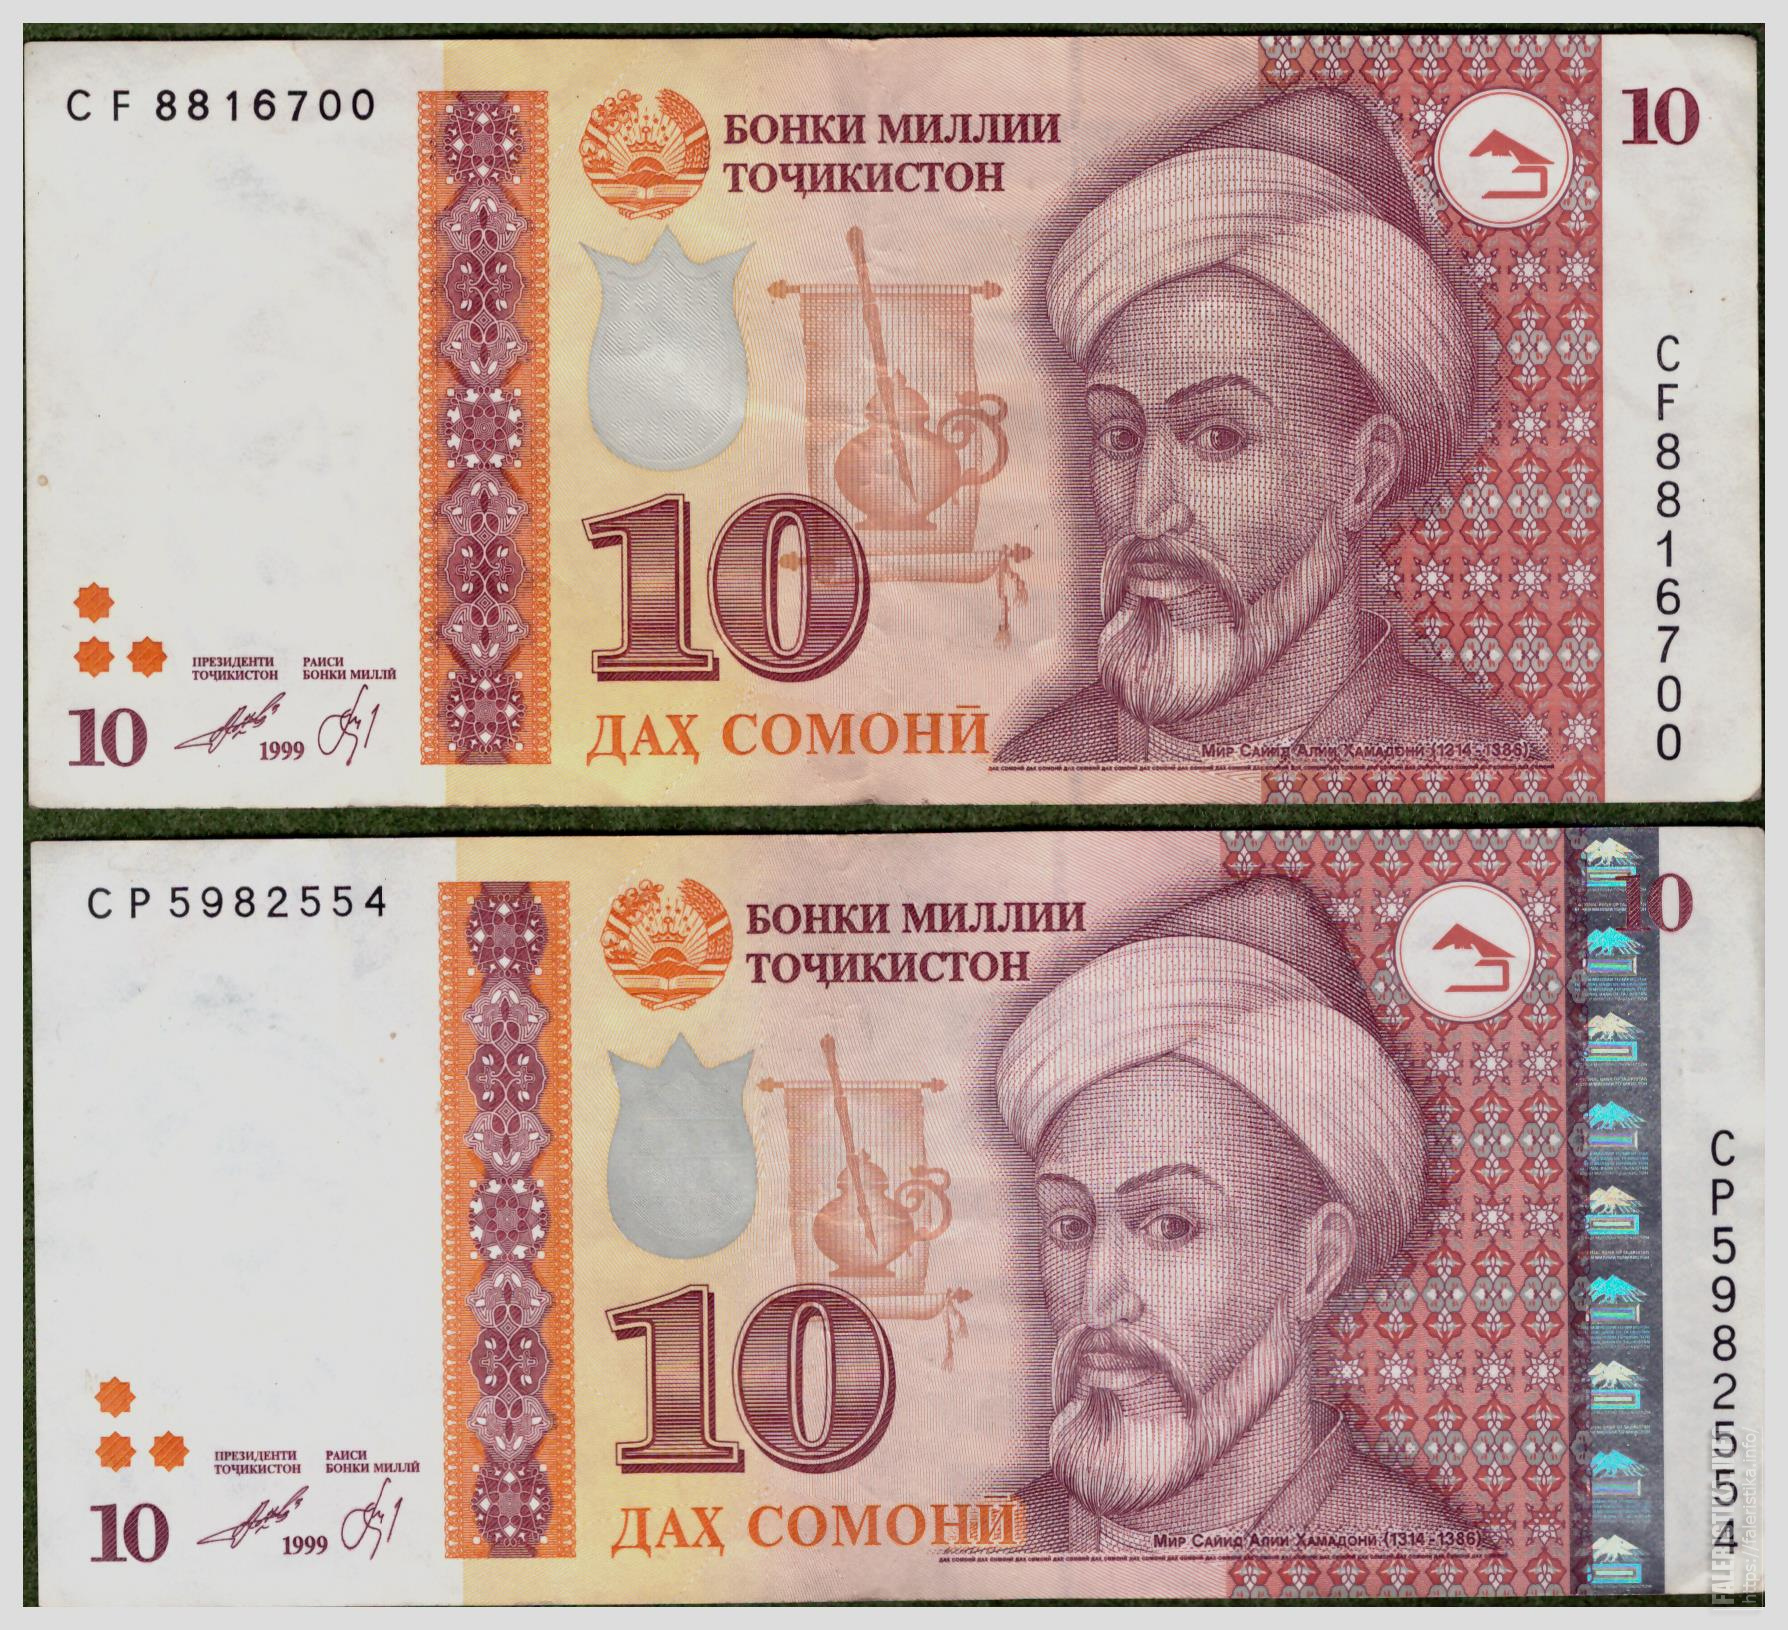 500 таджикски. Деньги Таджикистана 500 Сомони. Деньги Таджикистана 10 Сомони. Купюра Таджикистана 500 Сомони. Купюра 500 Сомони.